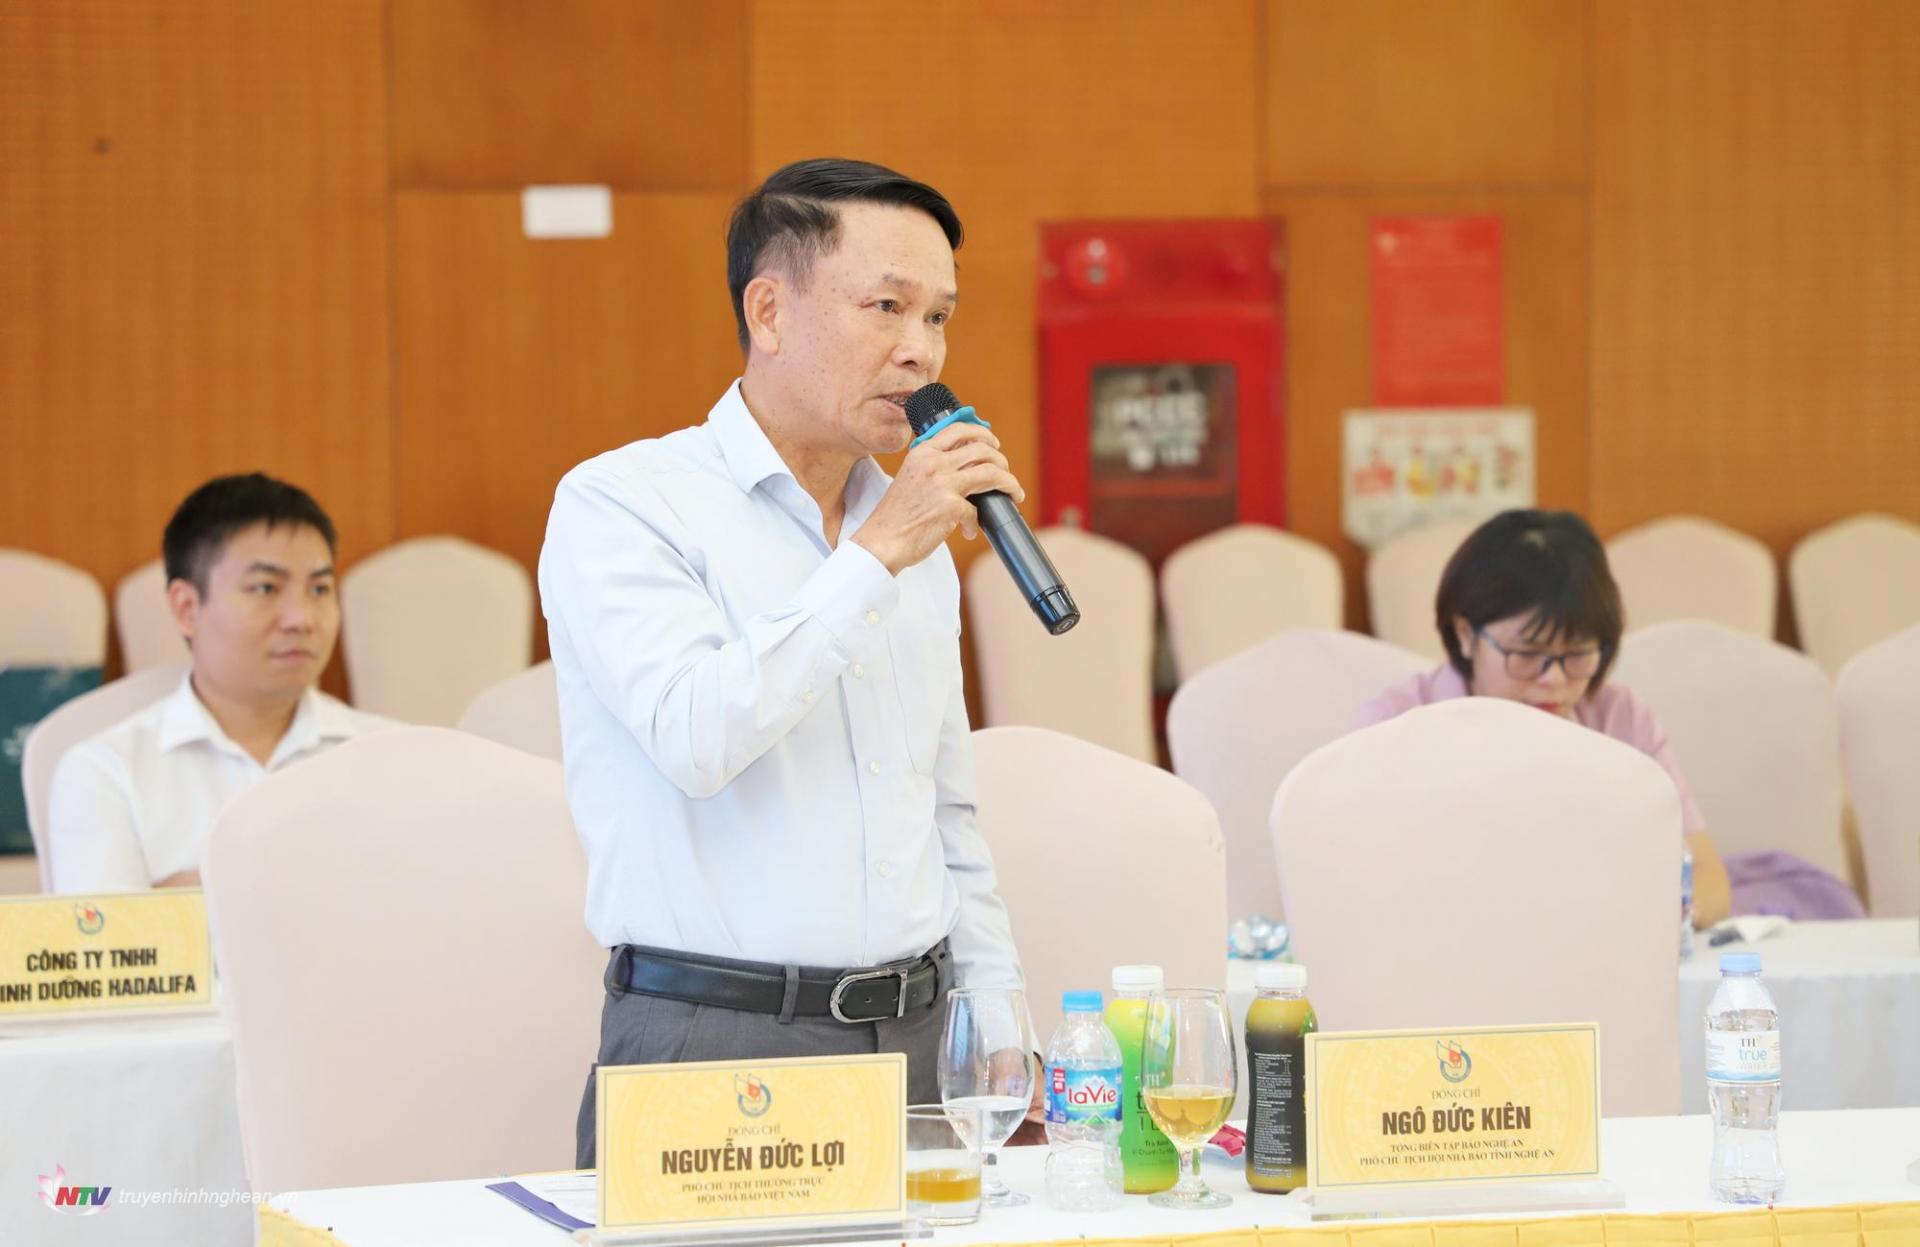 Đồng chí Nguyễn Đức Lợi - Phó Chủ tịch Thường trực Hội Nhà báo Việt Nam phát biểu thảo luận tại hội nghị.